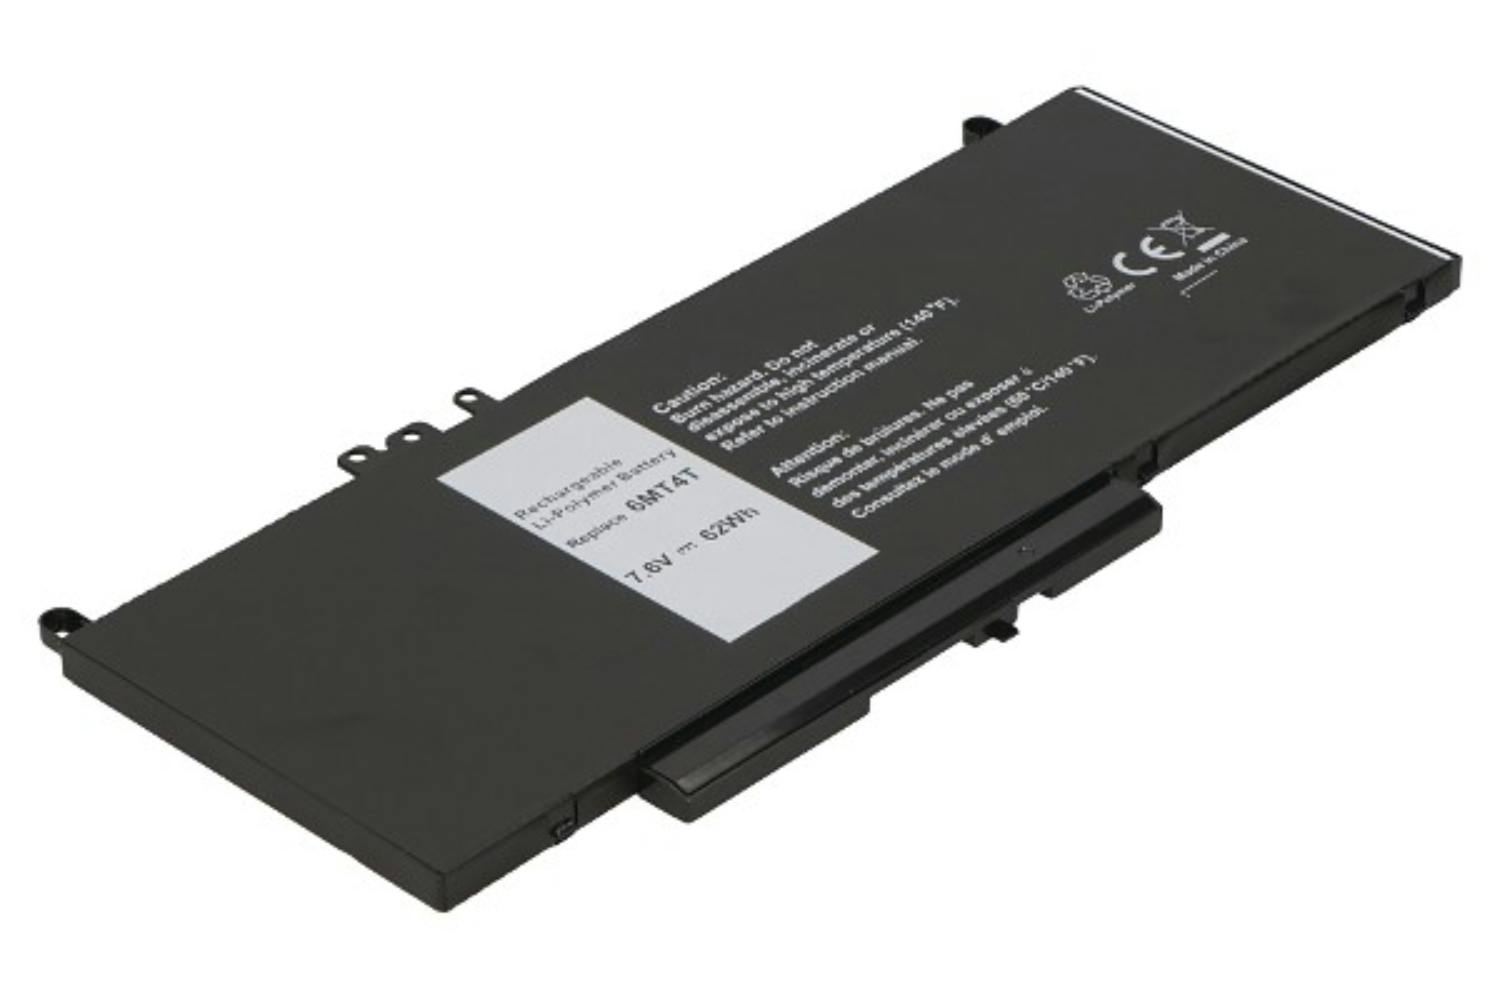 2-Power CBI3636A 5800mAh Main Battery Pack